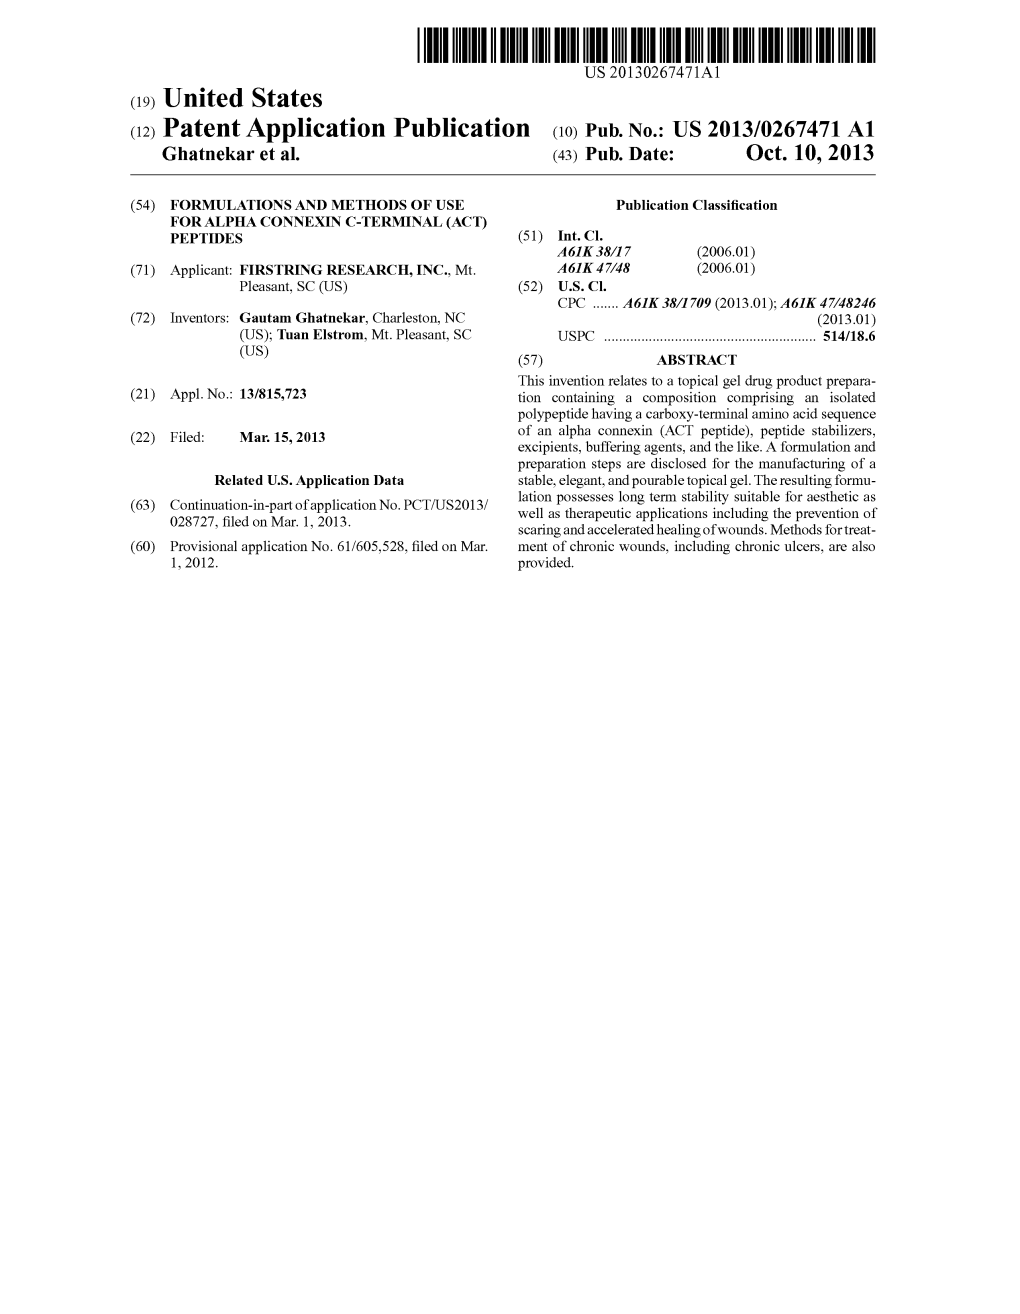 (12) Patent Application Publication (10) Pub. No.: US 2013/0267471 A1 Ghatnekar Et Al